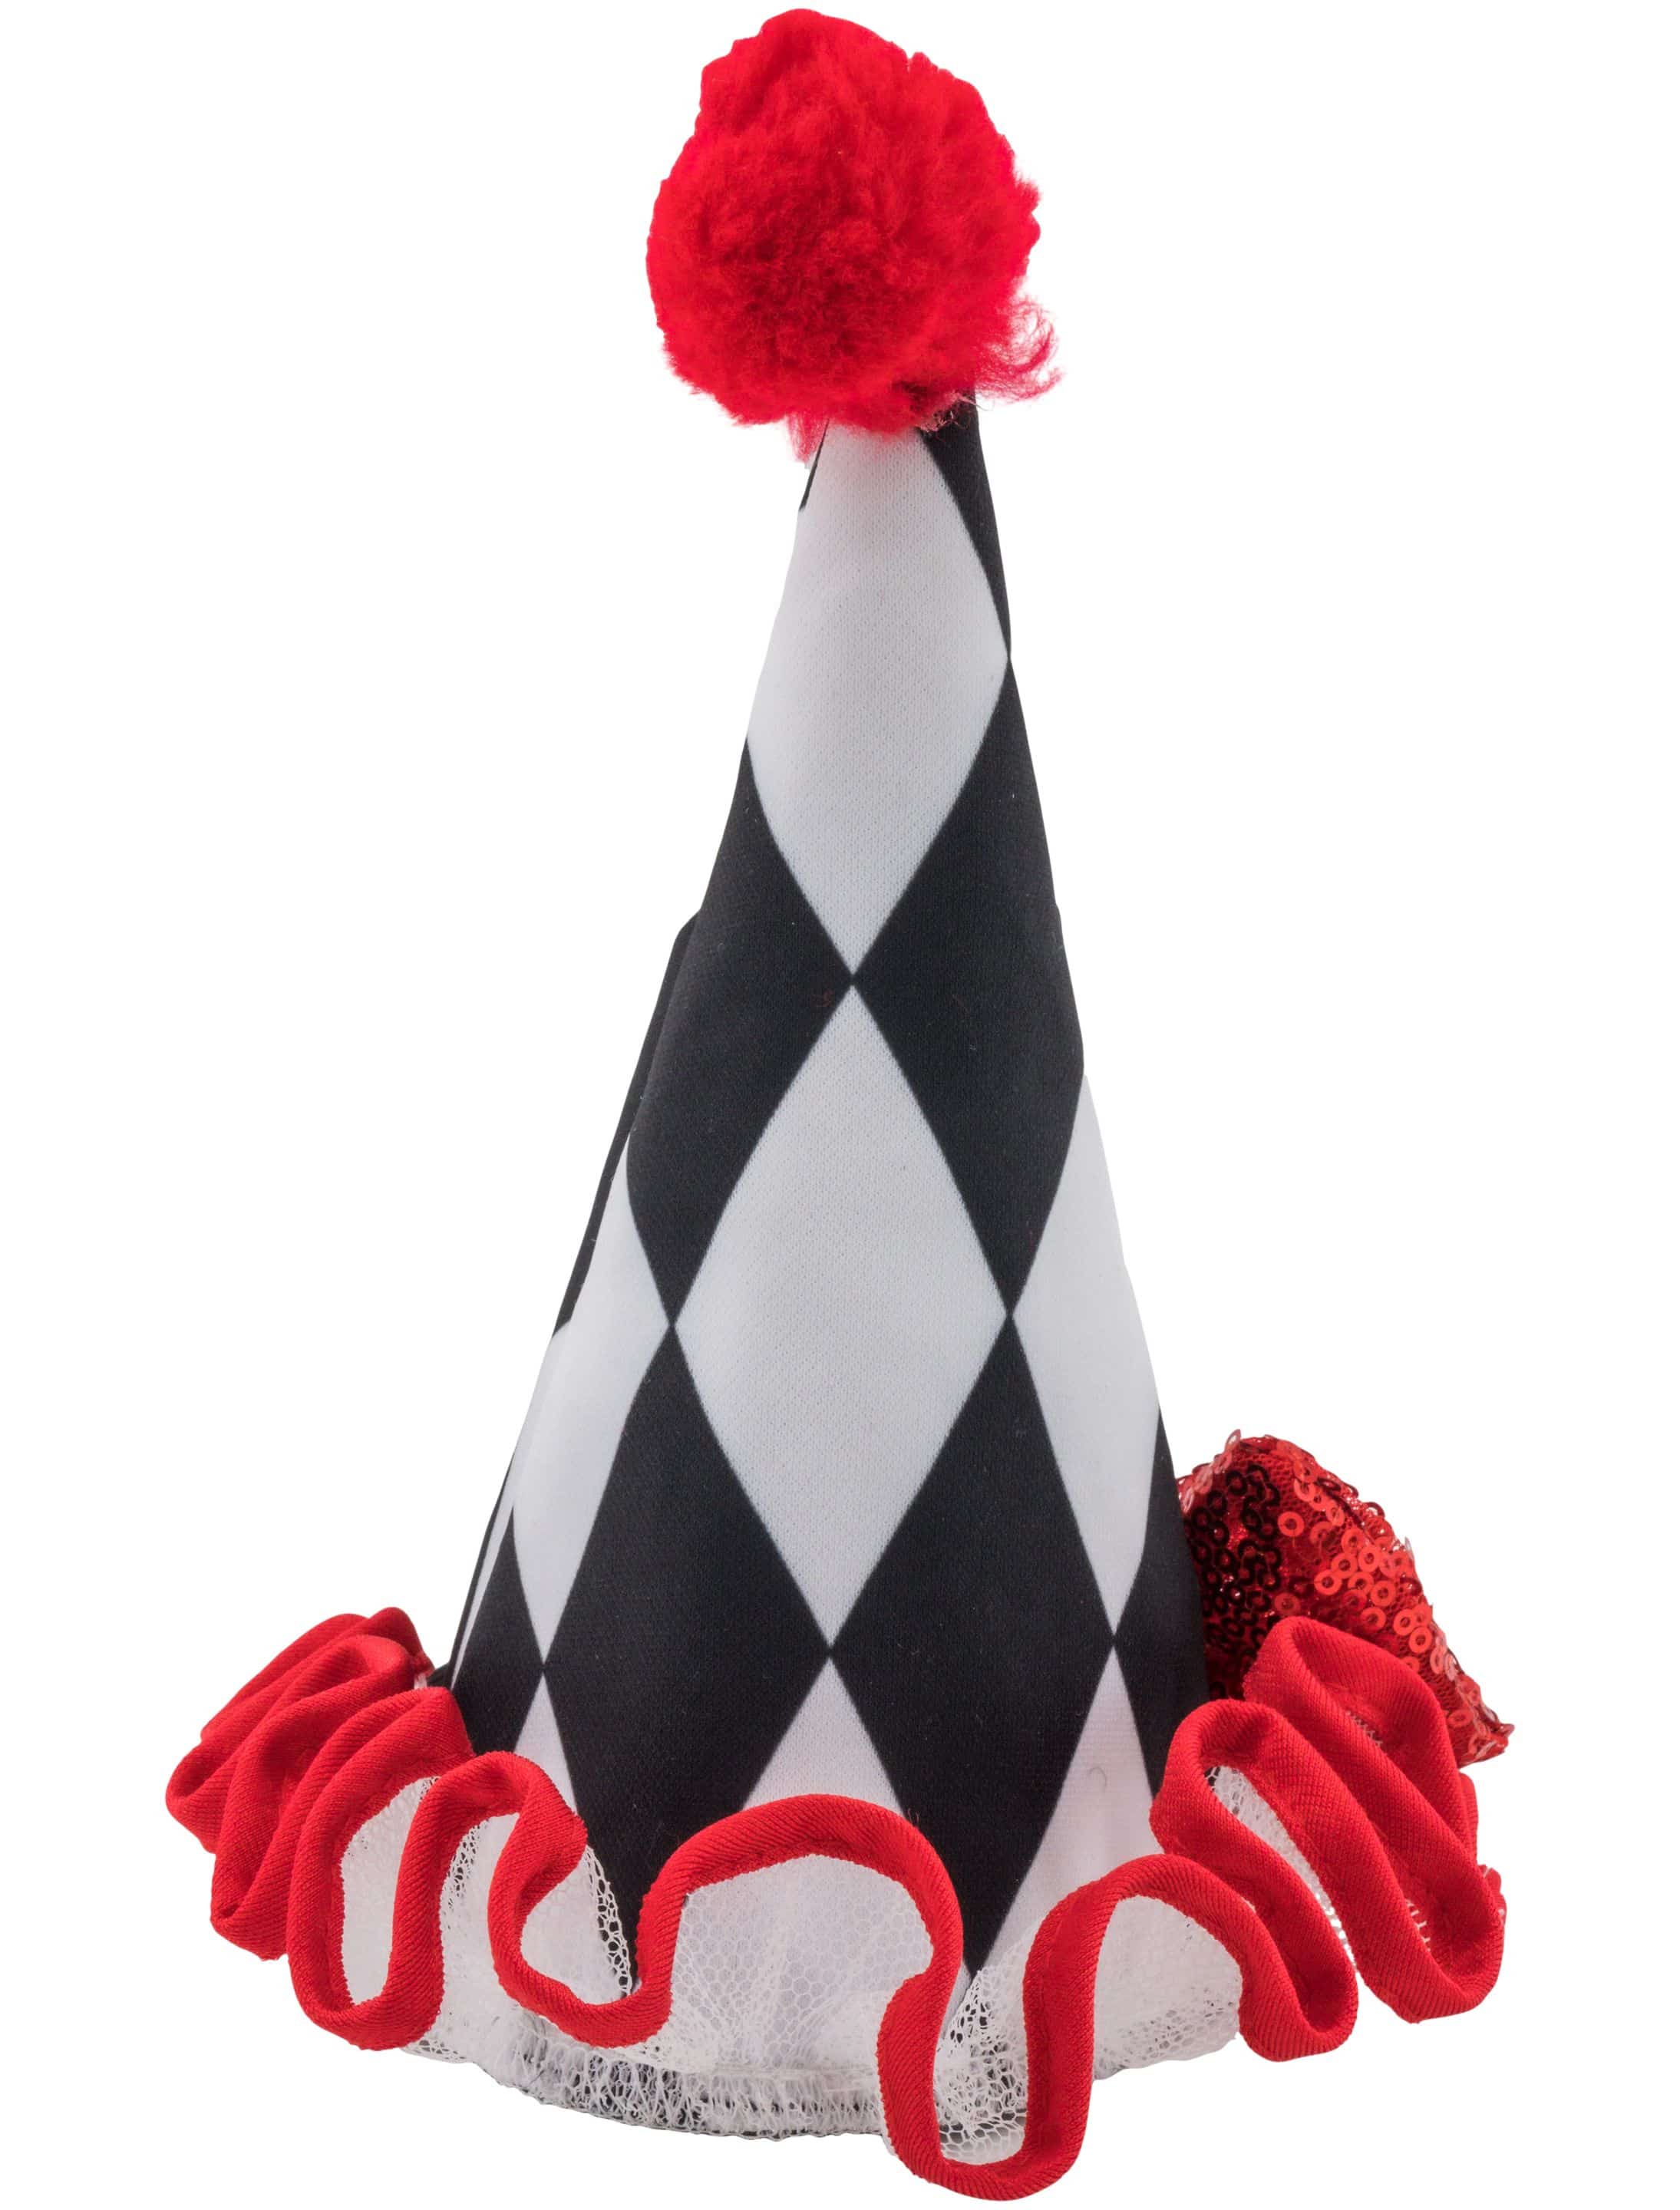 Spitzhut Clown schwarz/weiß/rot one size